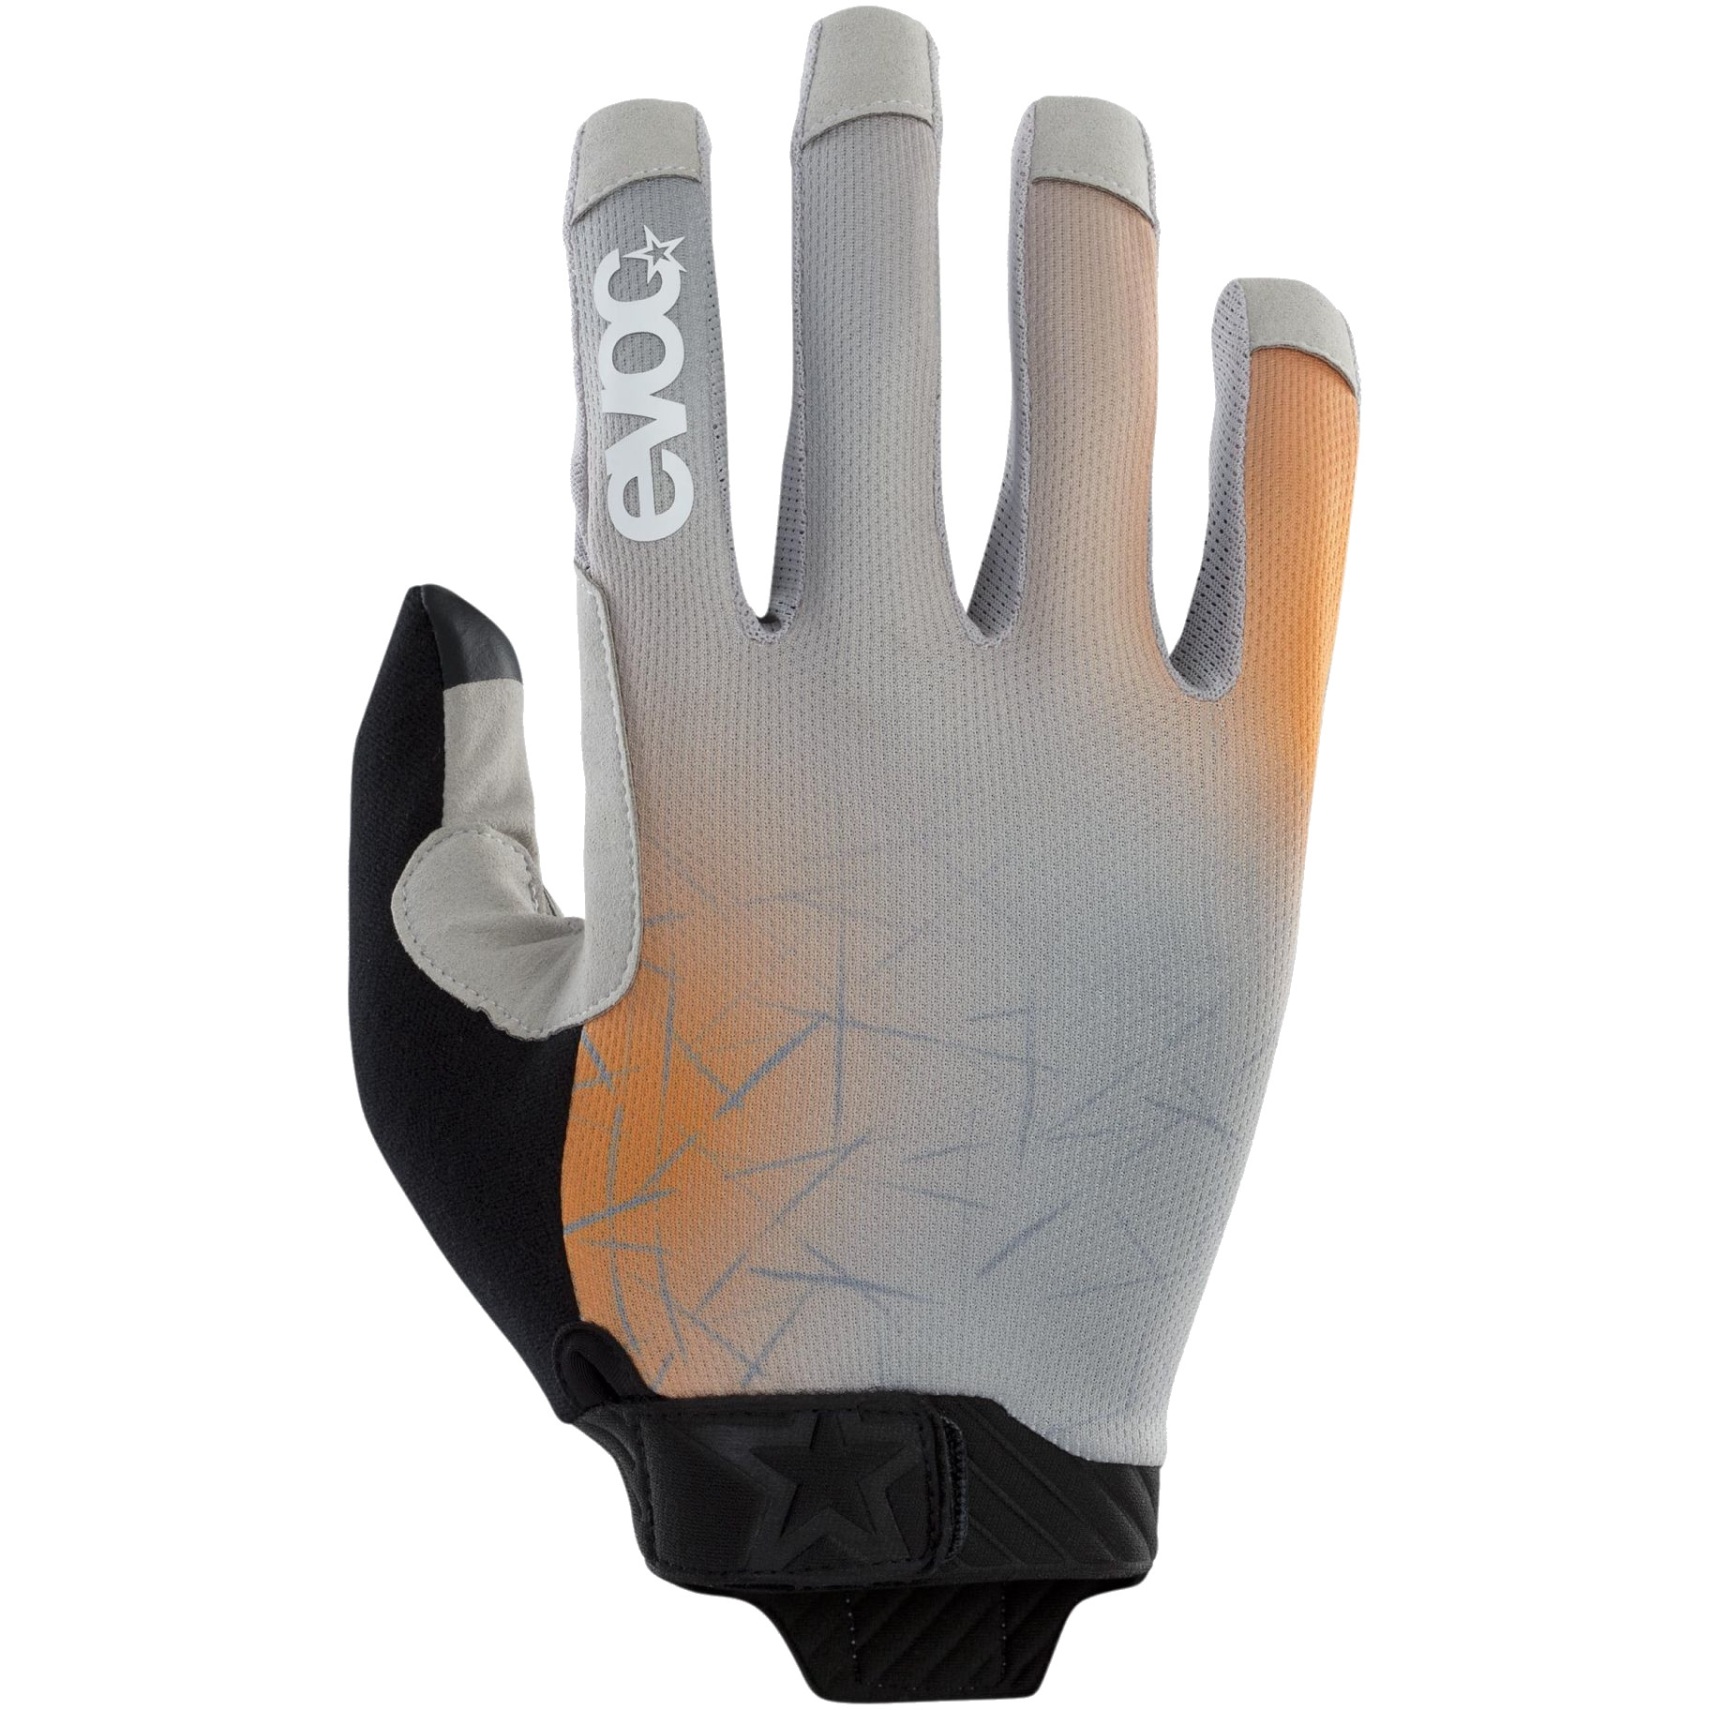 Produktbild von EVOC Enduro Touch Handschuhe - Stone